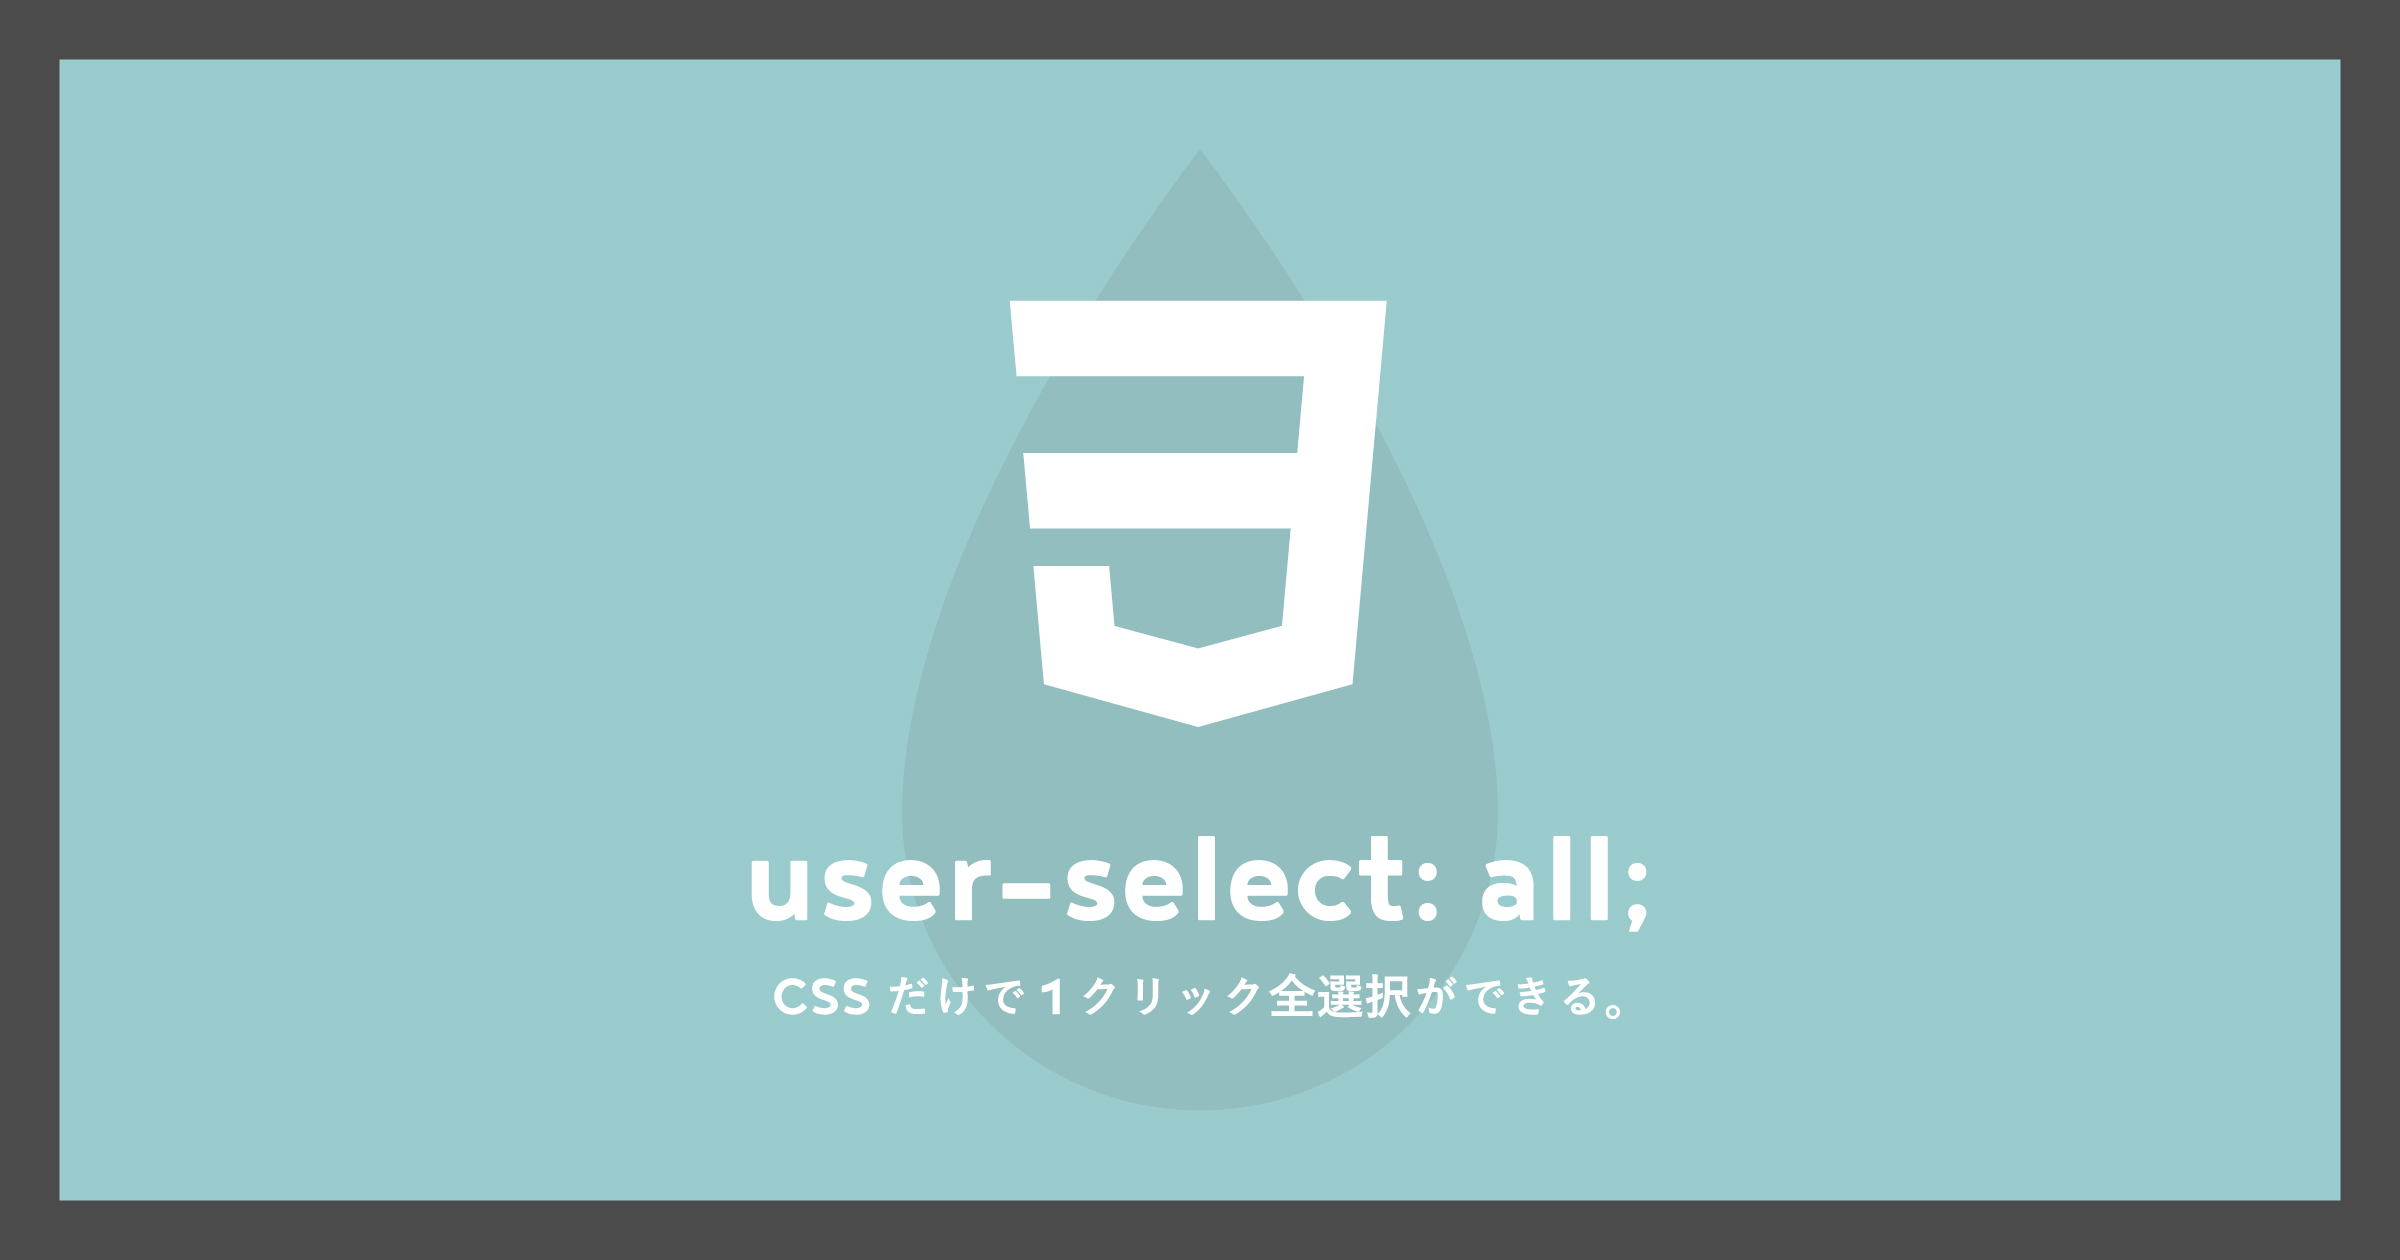 「[CSSだけ]1クリックで全選択できるuser-select:all;」のアイキャッチ画像